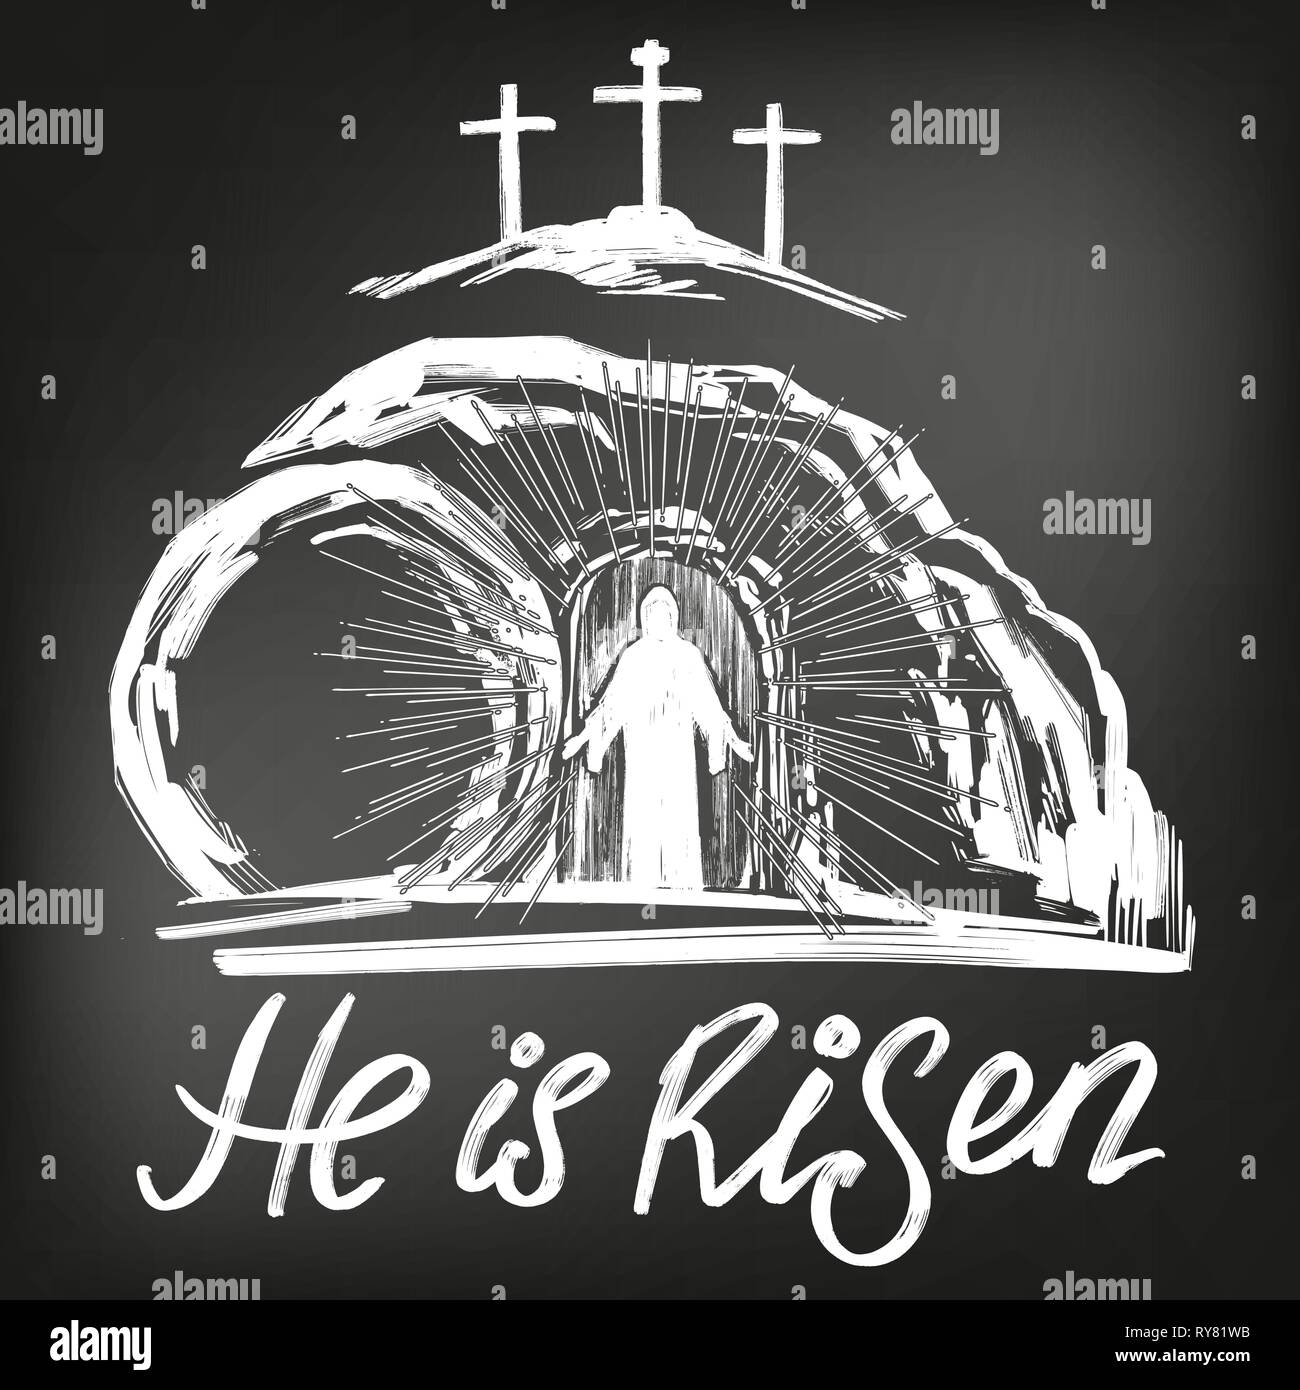 Ostern Jesus Christus von den Toten auferstanden ist. Sonntag Morgen. Dawn. Das leere Grab im Hintergrund der Kreuzigung. Symbol des Christentums Vektor Stock Vektor